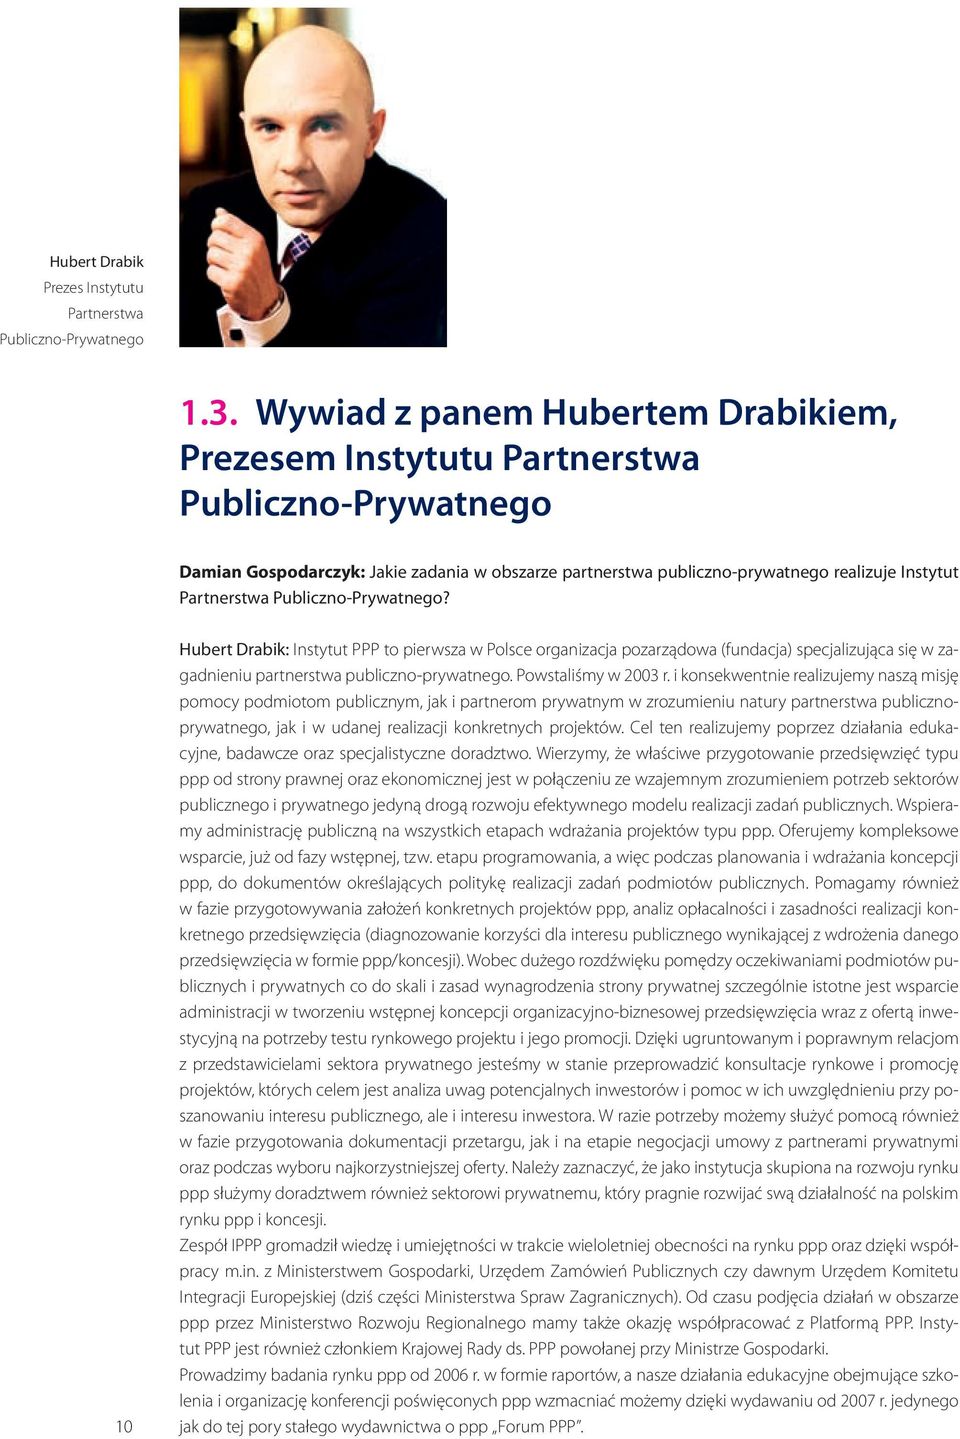 Publiczno-Prywatnego? 10 Hubert Drabik: Instytut ppp to pierwsza w Polsce organizacja pozarządowa (fundacja) specjalizująca się w zagadnieniu partnerstwa publiczno-prywatnego. Powstaliśmy w 2003 r.